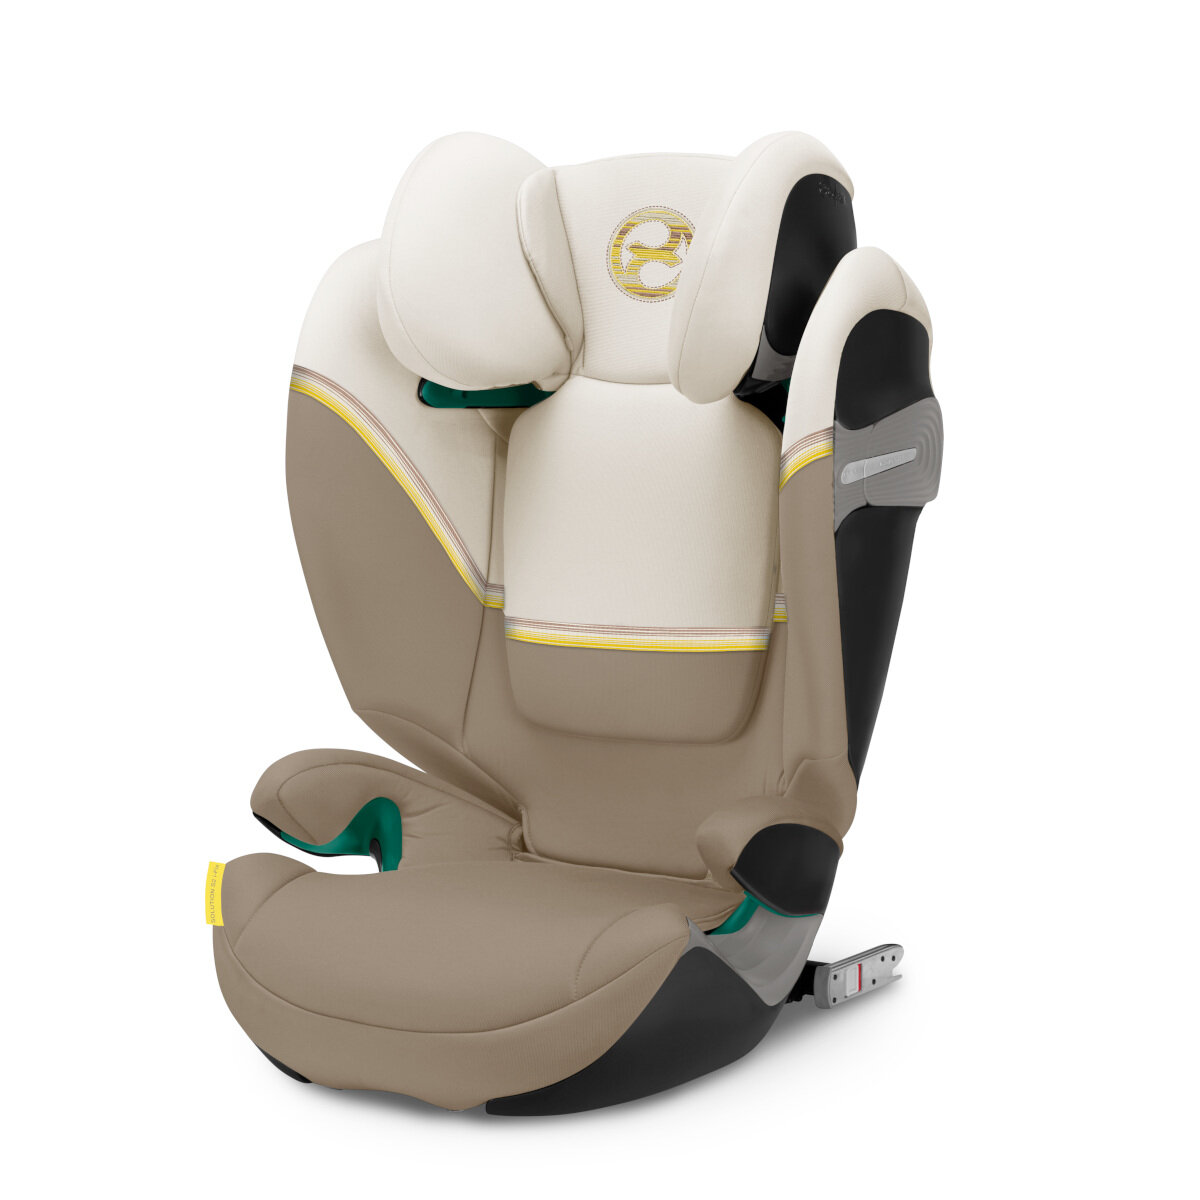 Cybex Kindersitz Solution S2 i-Fix - babyprofi.de, 179,95 €